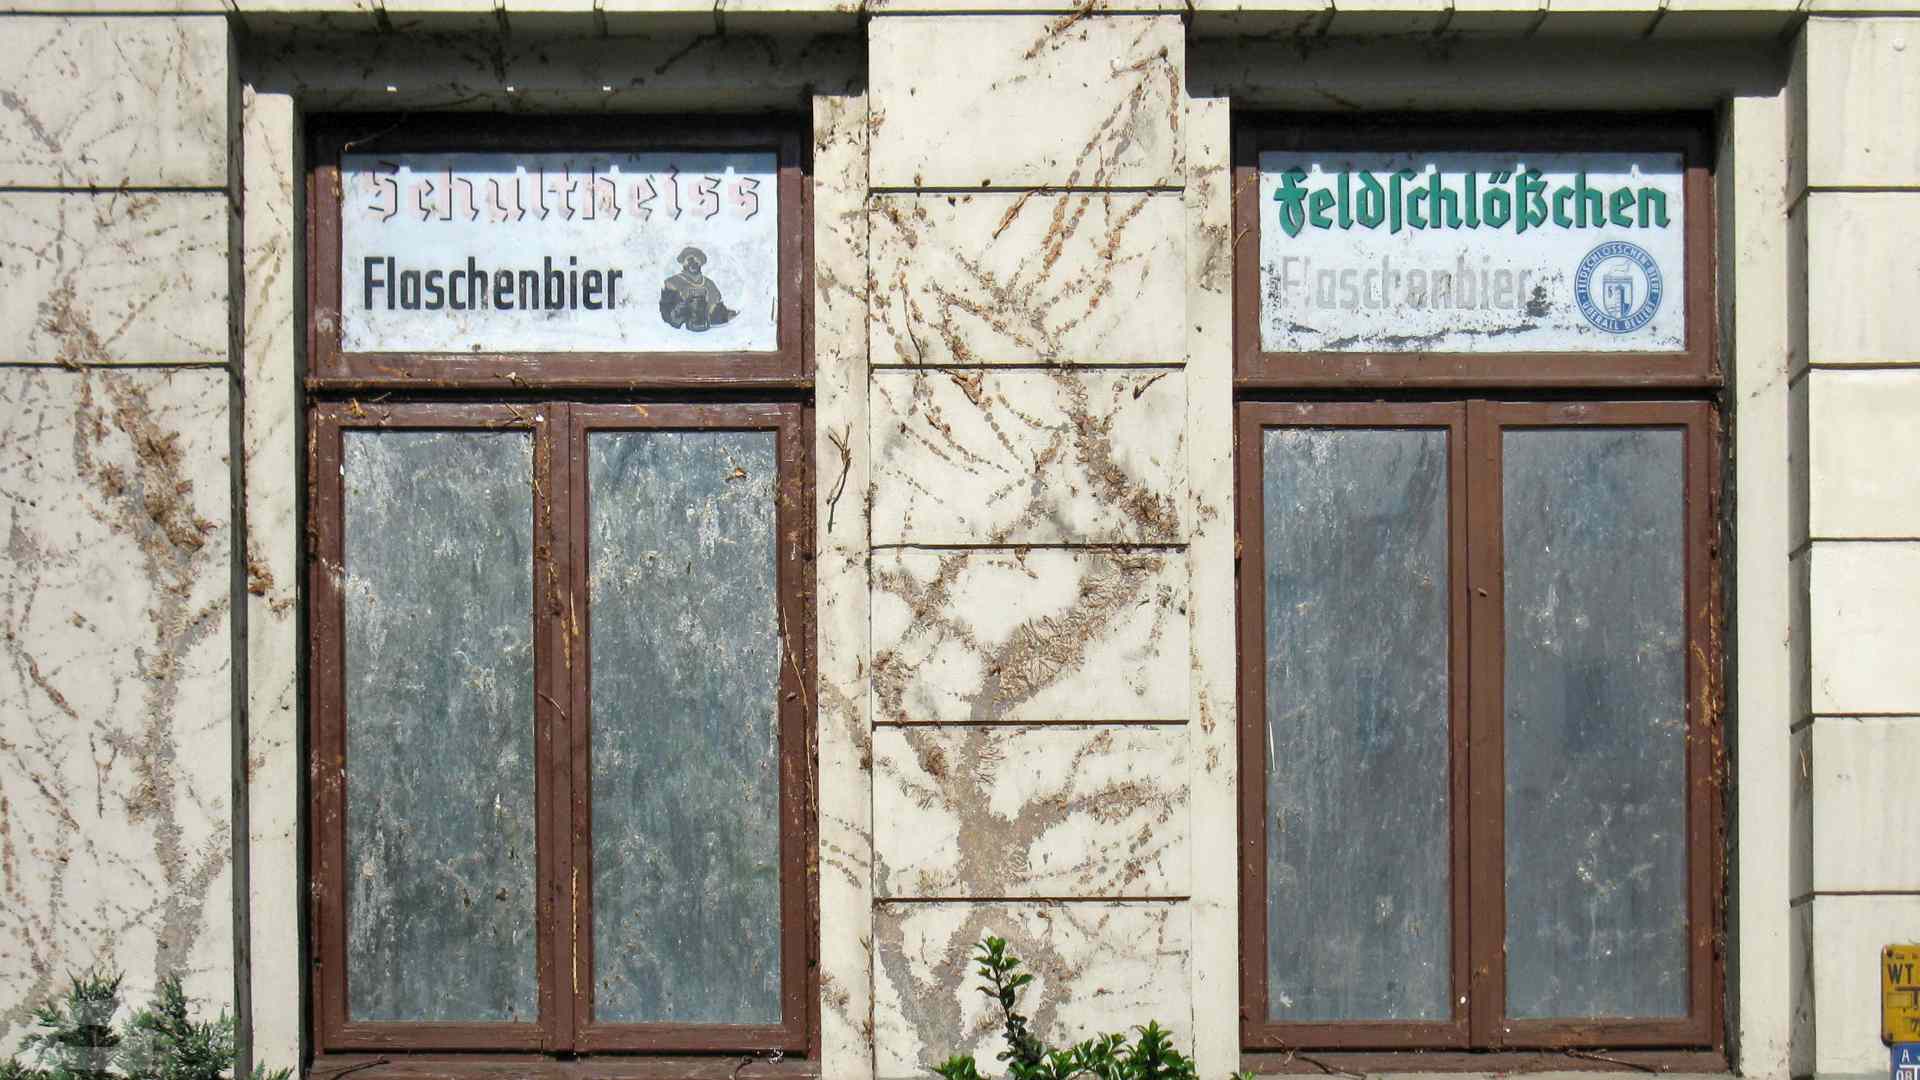 ehemaliger Kiosk am Altewiekring mit Feldschlößchen-Werbung